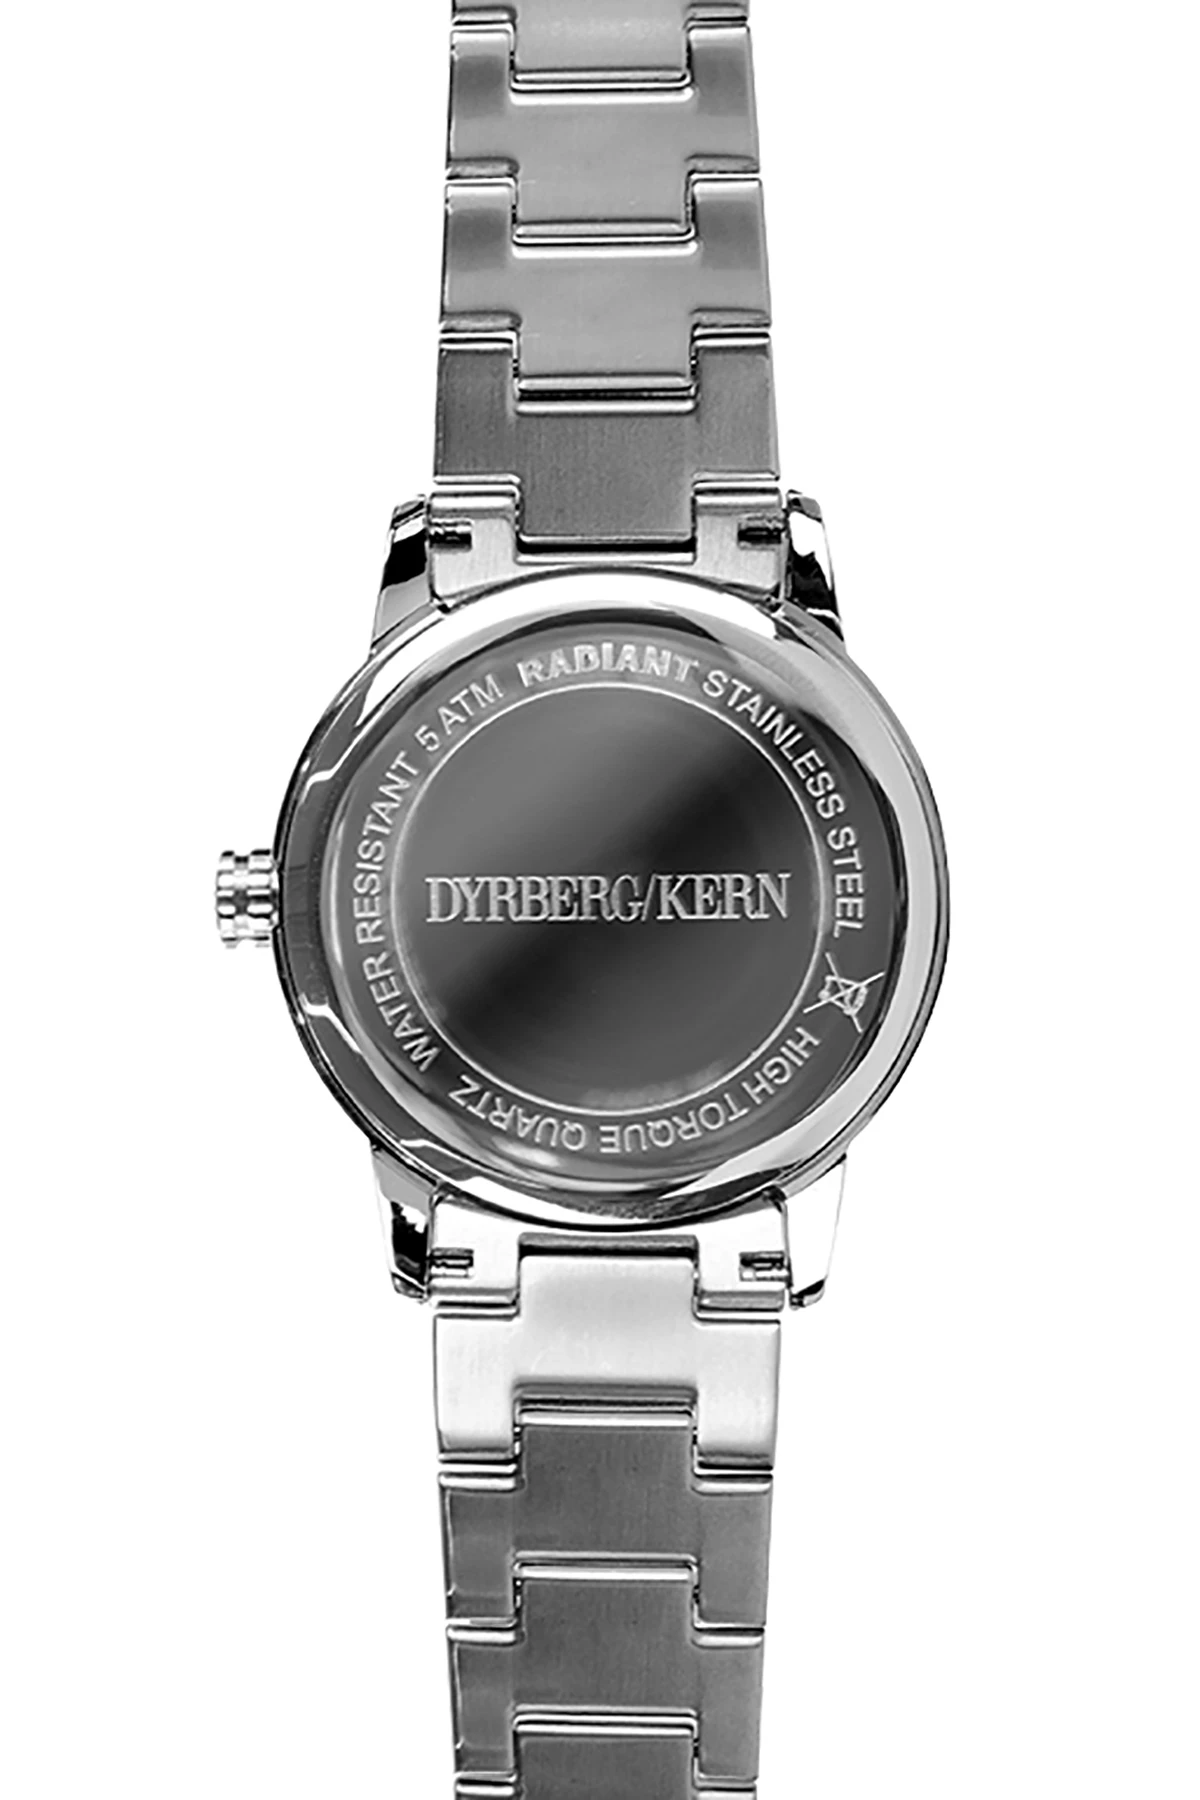 Kommandør Enumerate ulv Mindst 25 forskellige ure fra DYRBERG/KERN - Køb her